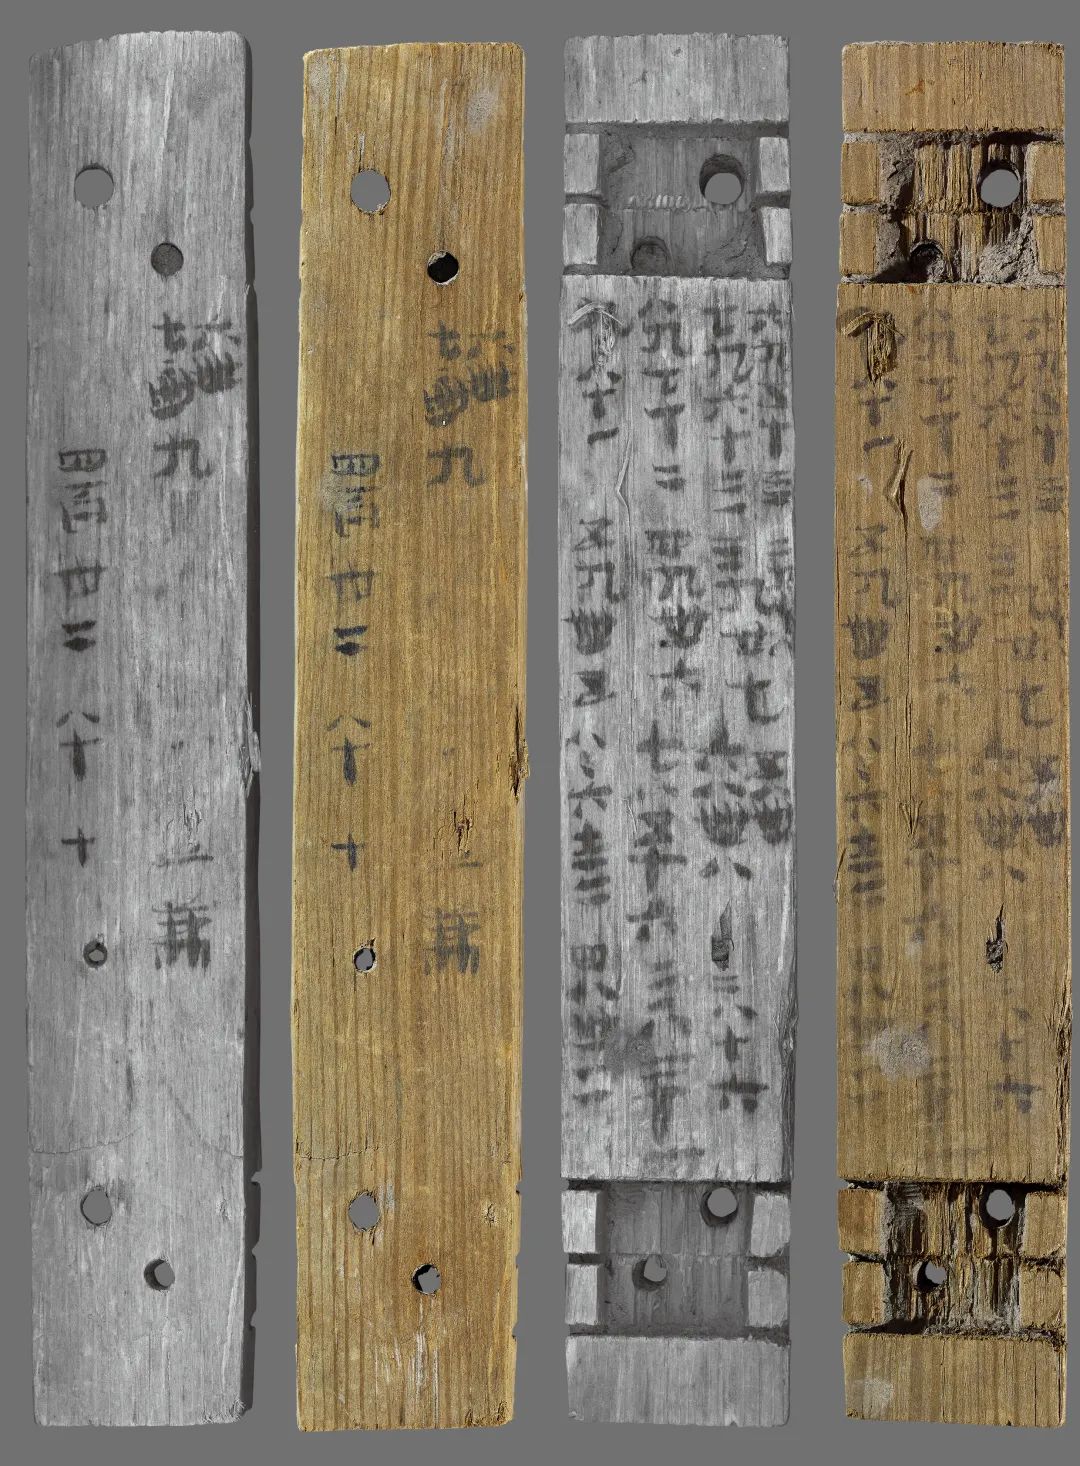 Naskah Kuno di Potongan Bambu Diteliti-Image-3